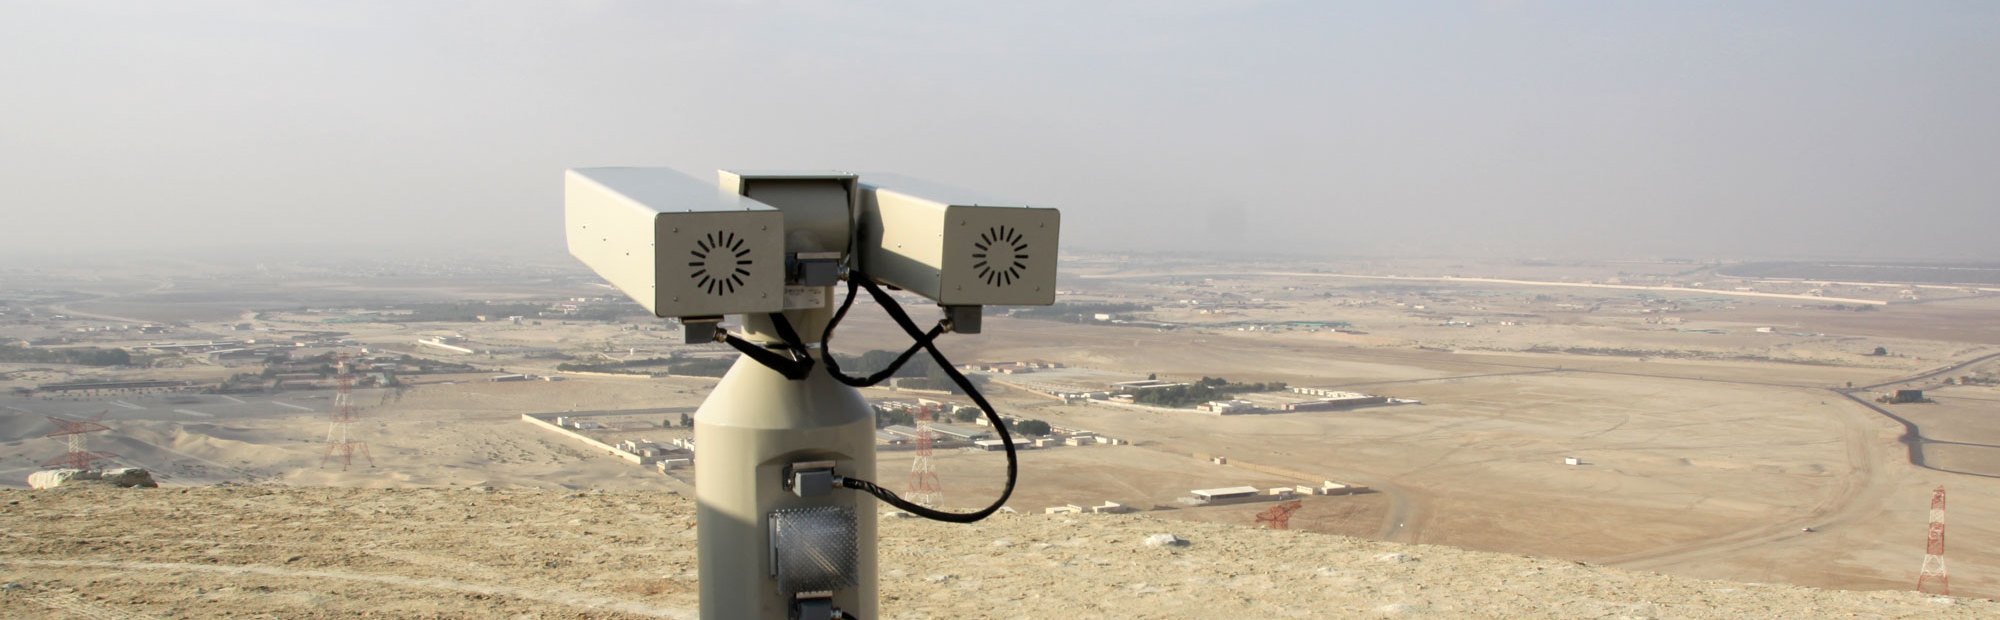 Long-Range Camera Abu Dhabi